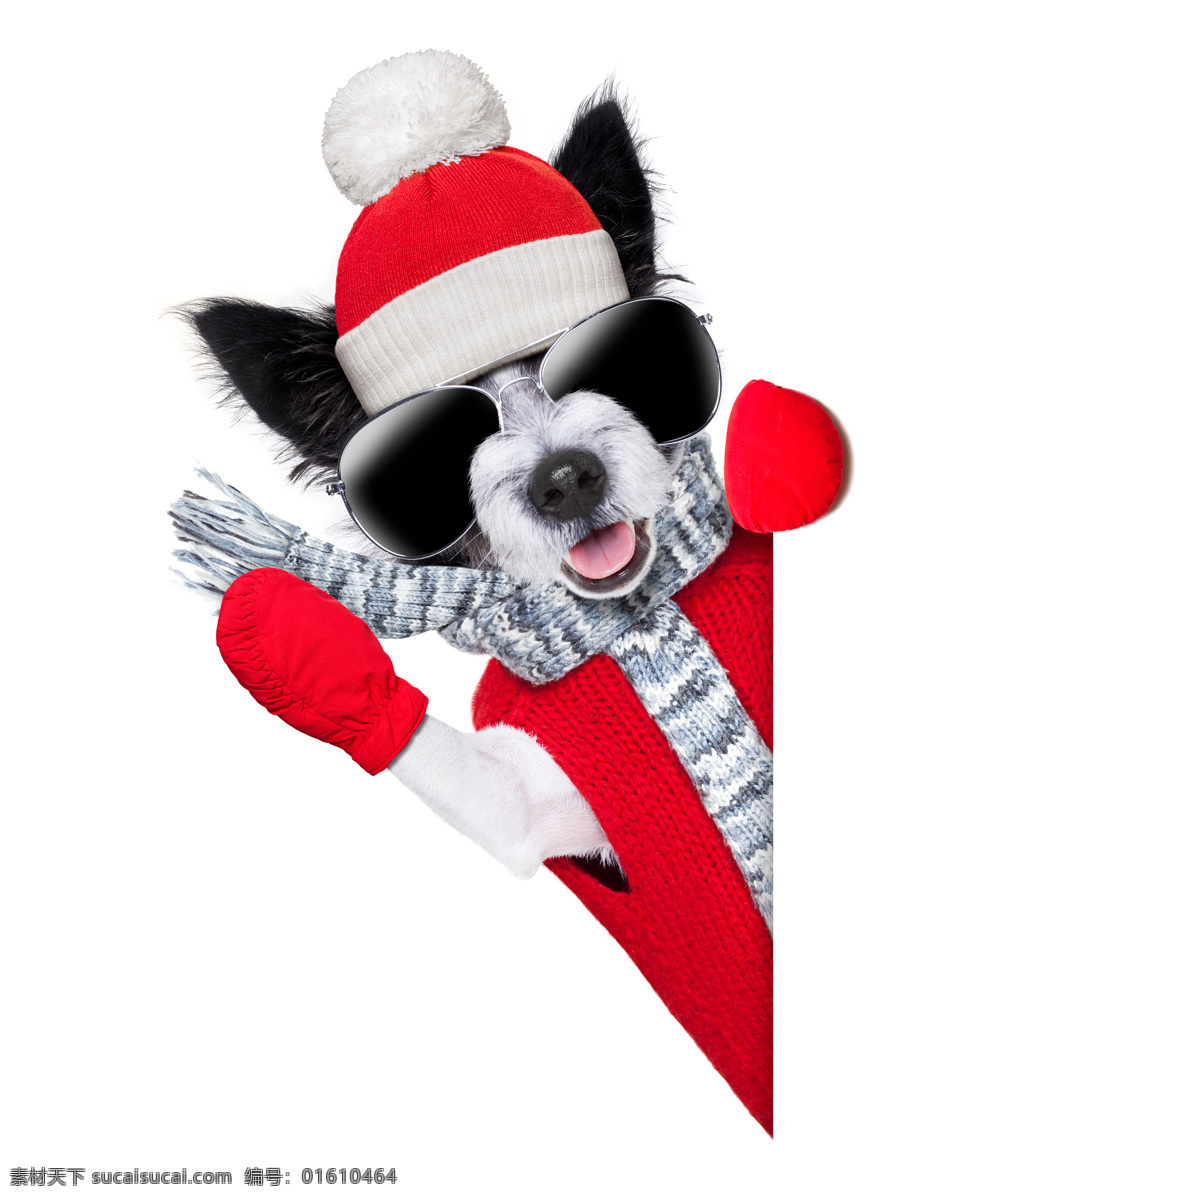 可爱 冬天 小狗 圣诞节 圣诞帽 红色毛衣 围巾 墨镜 可爱的小狗 狗狗 宠物狗 小动物 可爱动物 陆地动物 生物世界 白色